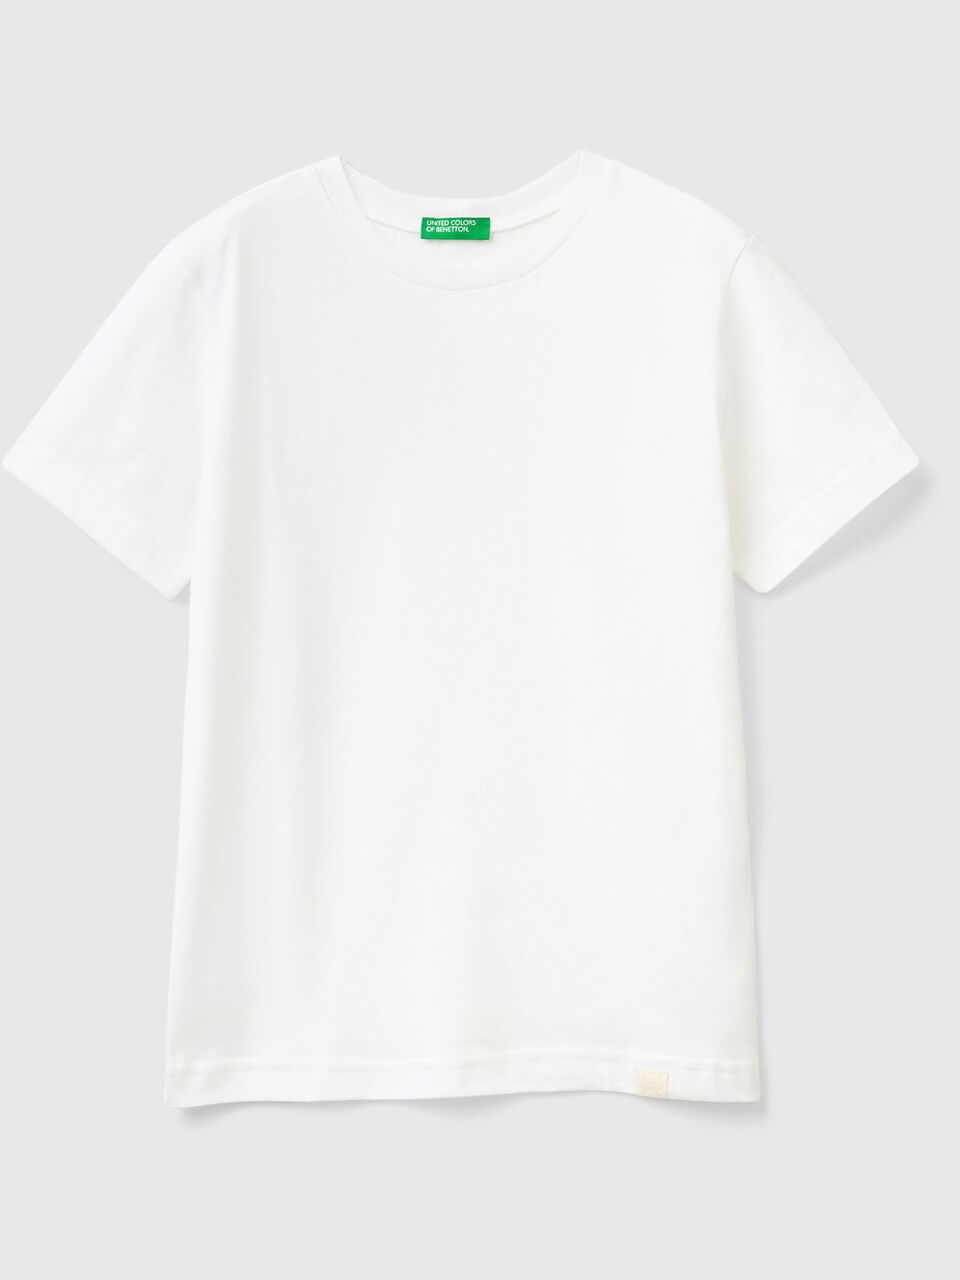 aus | Benetton - Weiss T-Shirt Bio-Baumwolle